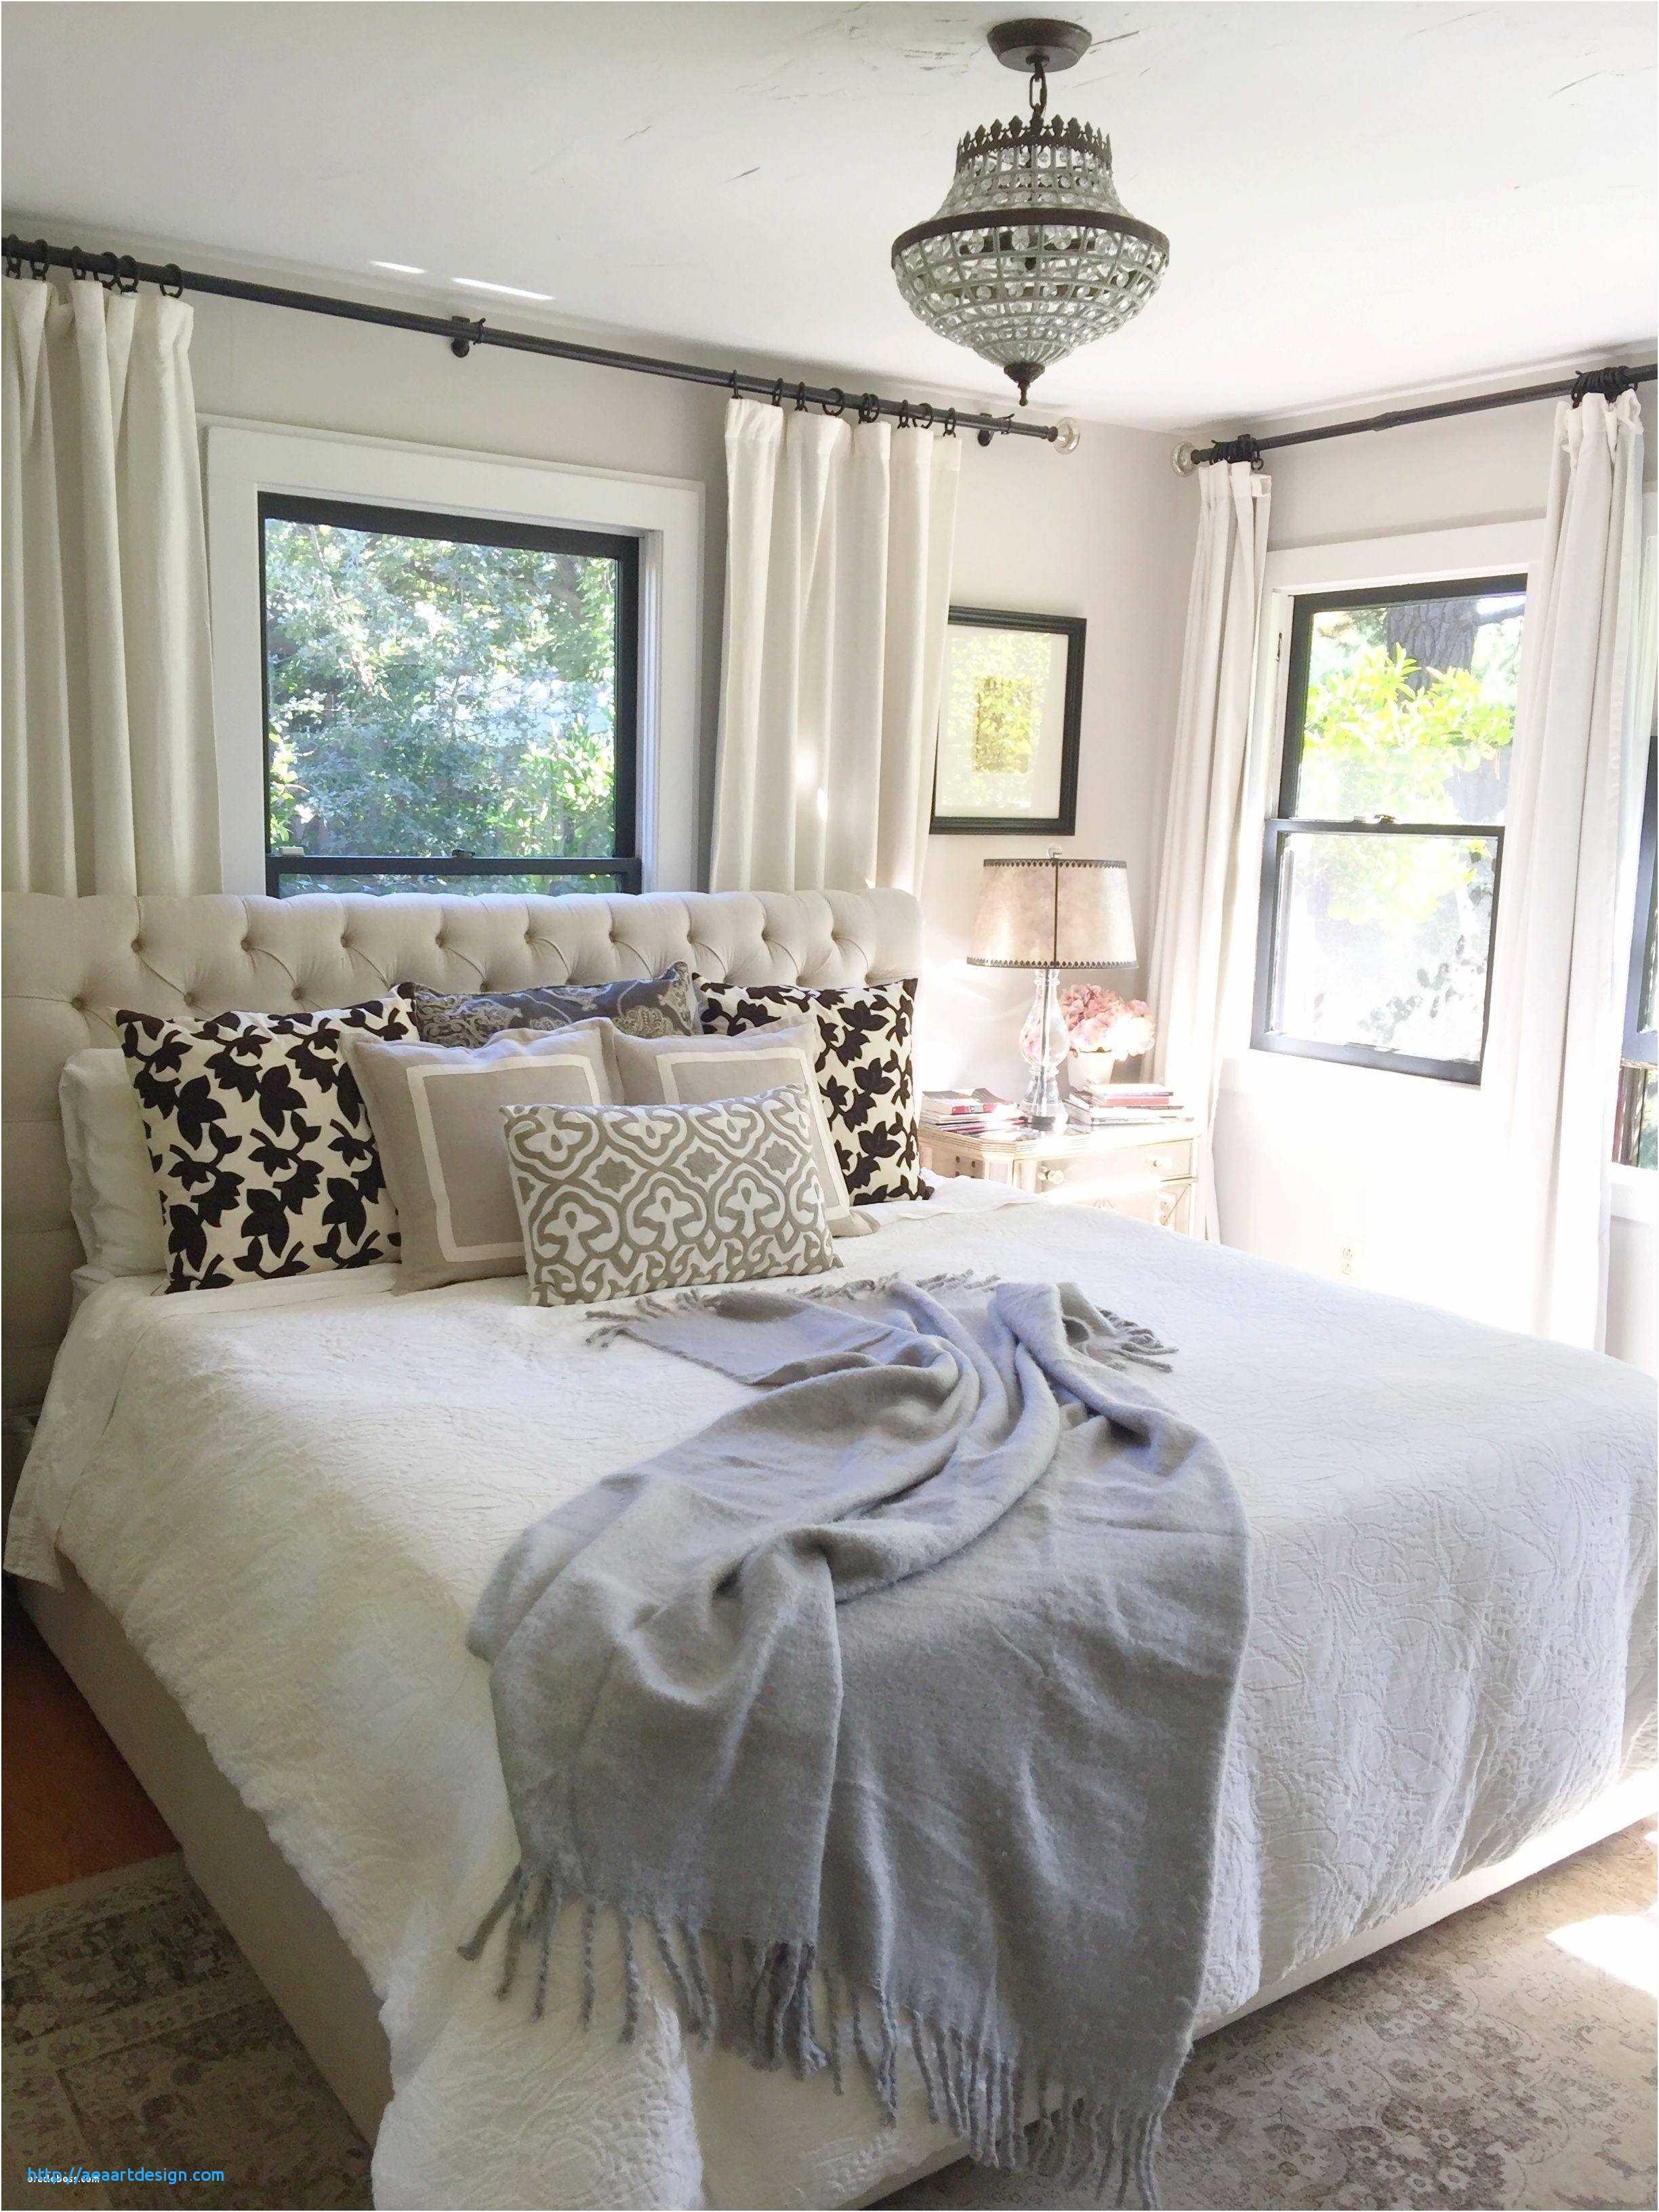 Luxury Romantic Cozy Master Bedroom New Romantic Master Bedroom Decorating Ideas